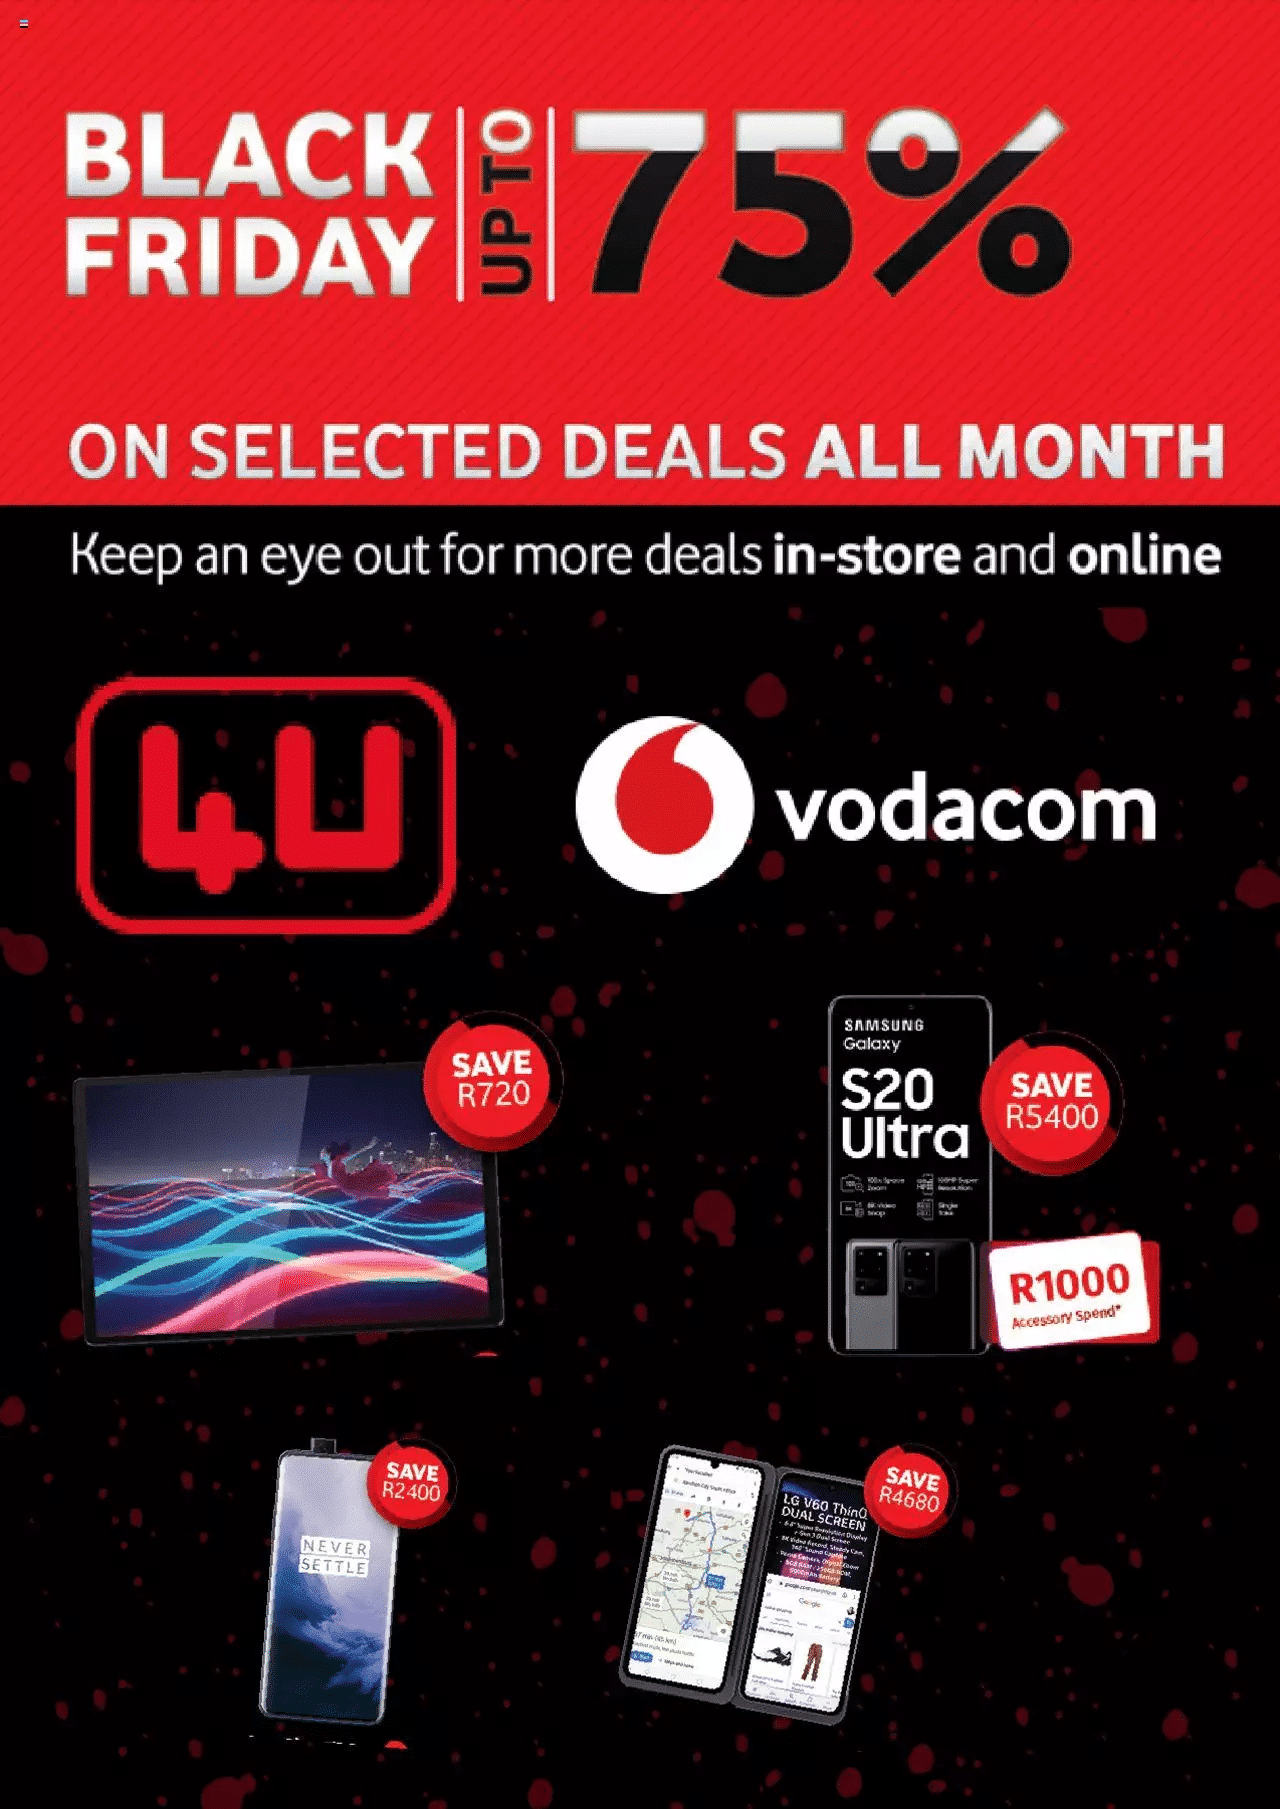 Vodacom Black Friday Deals & Specials 2021 - Where Can You Get Black Friday Deals